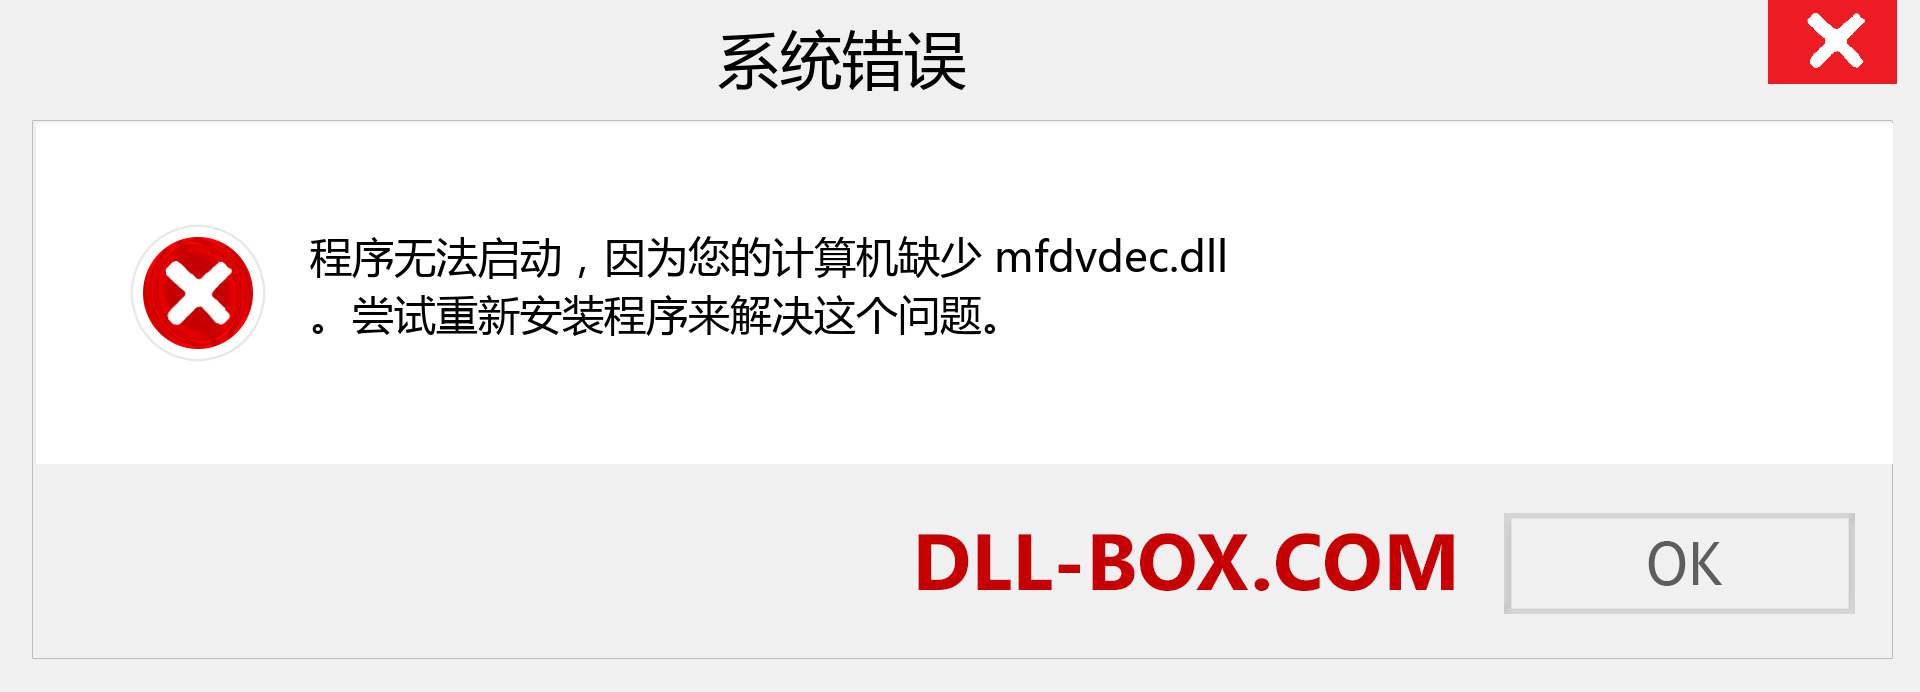 mfdvdec.dll 文件丢失？。 适用于 Windows 7、8、10 的下载 - 修复 Windows、照片、图像上的 mfdvdec dll 丢失错误